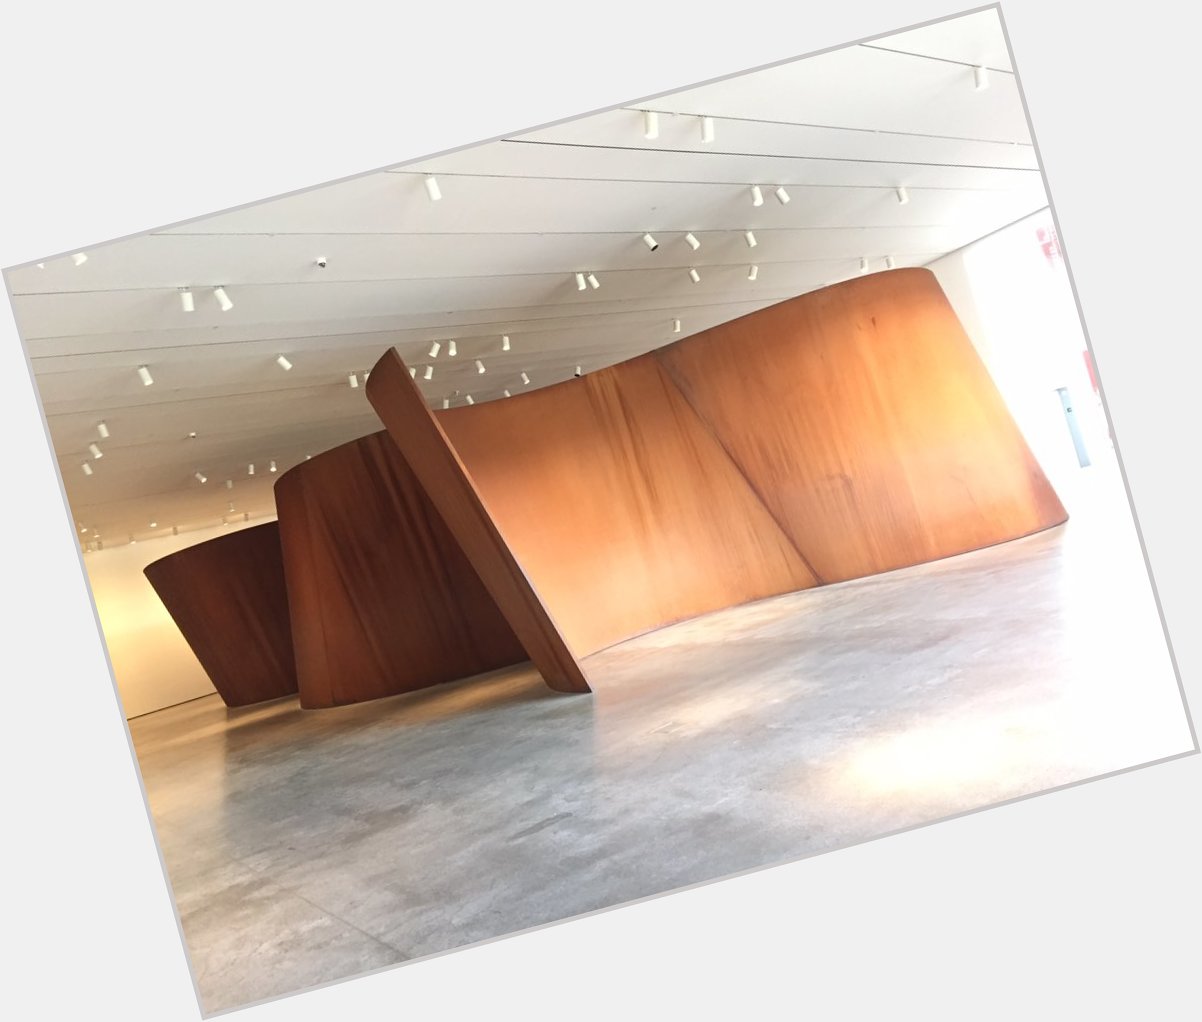 Happy birthday to Richard Serra!   